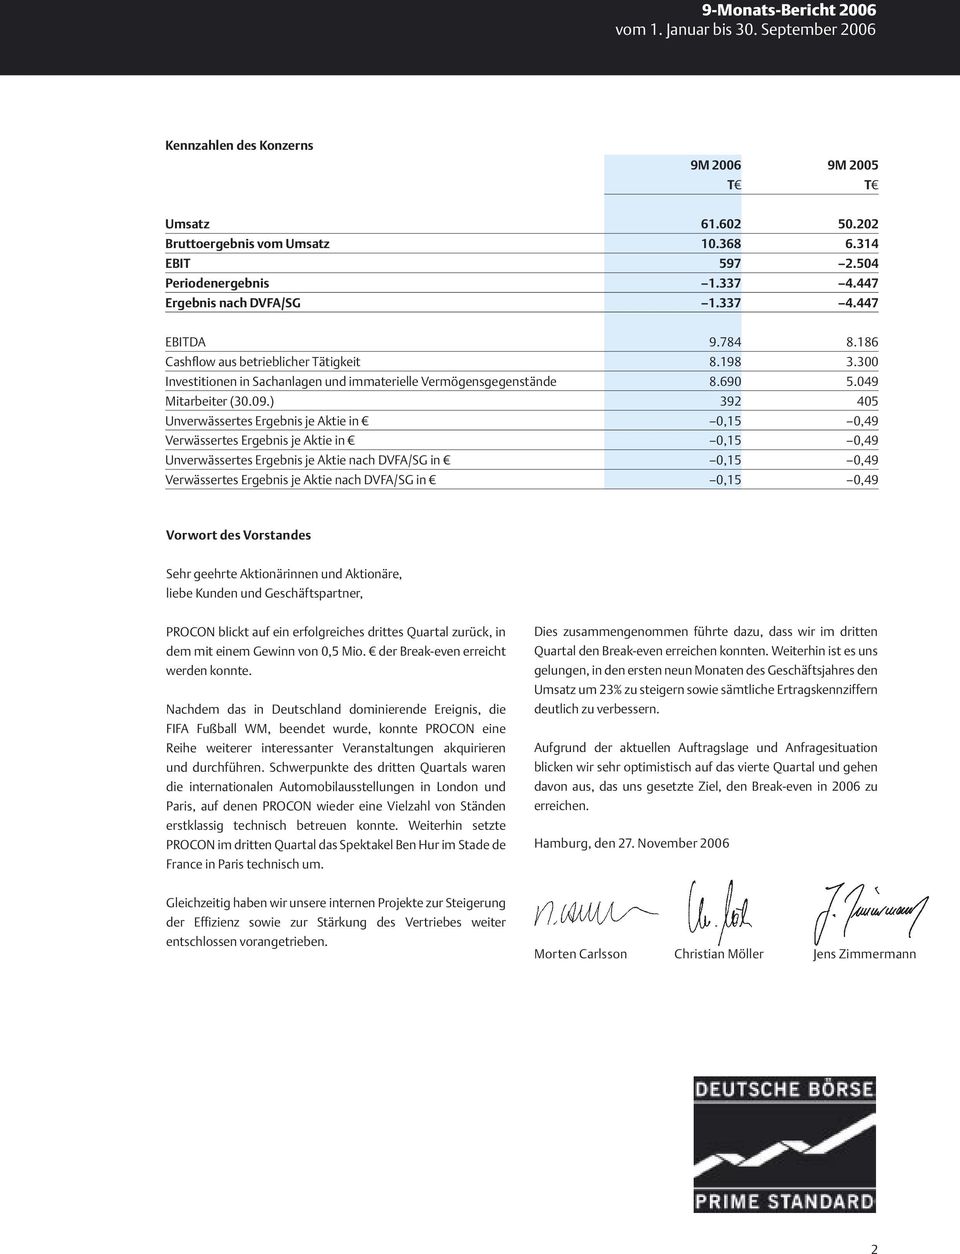 300 Investitionen in Sachanlagen und immaterielle Vermögensgegenstände 8.690 5.049 Mitarbeiter (30.09.